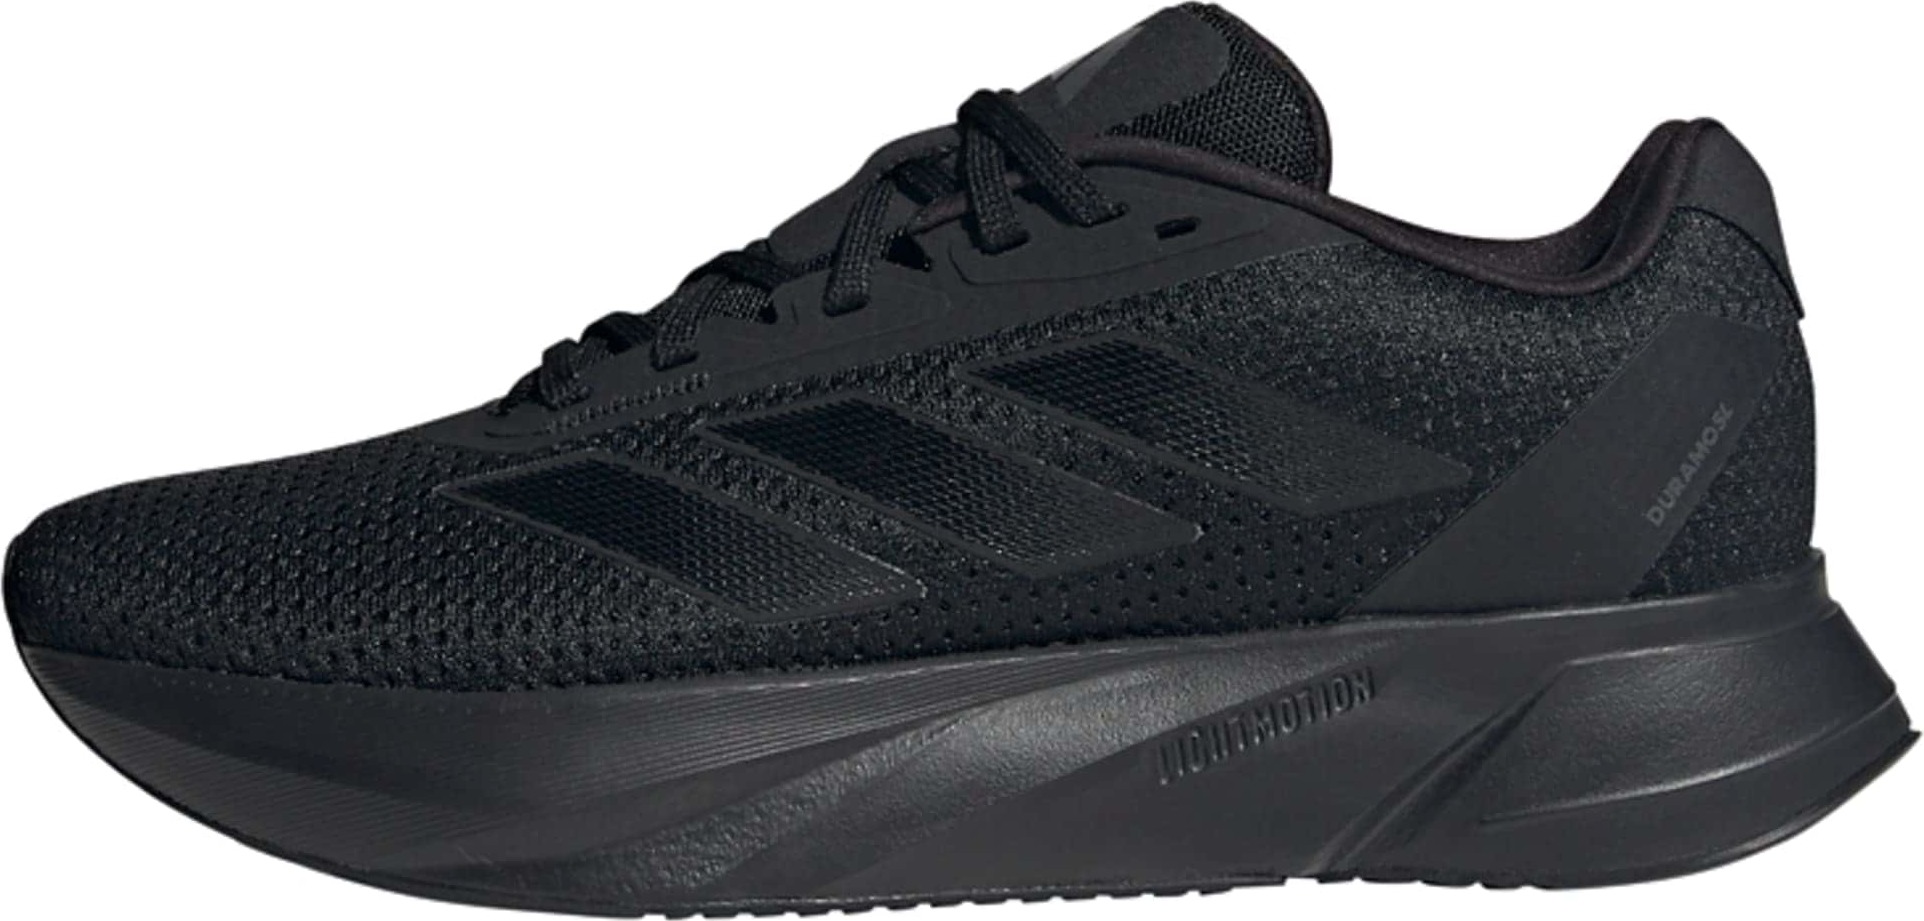 Běžecká obuv adidas performance černá